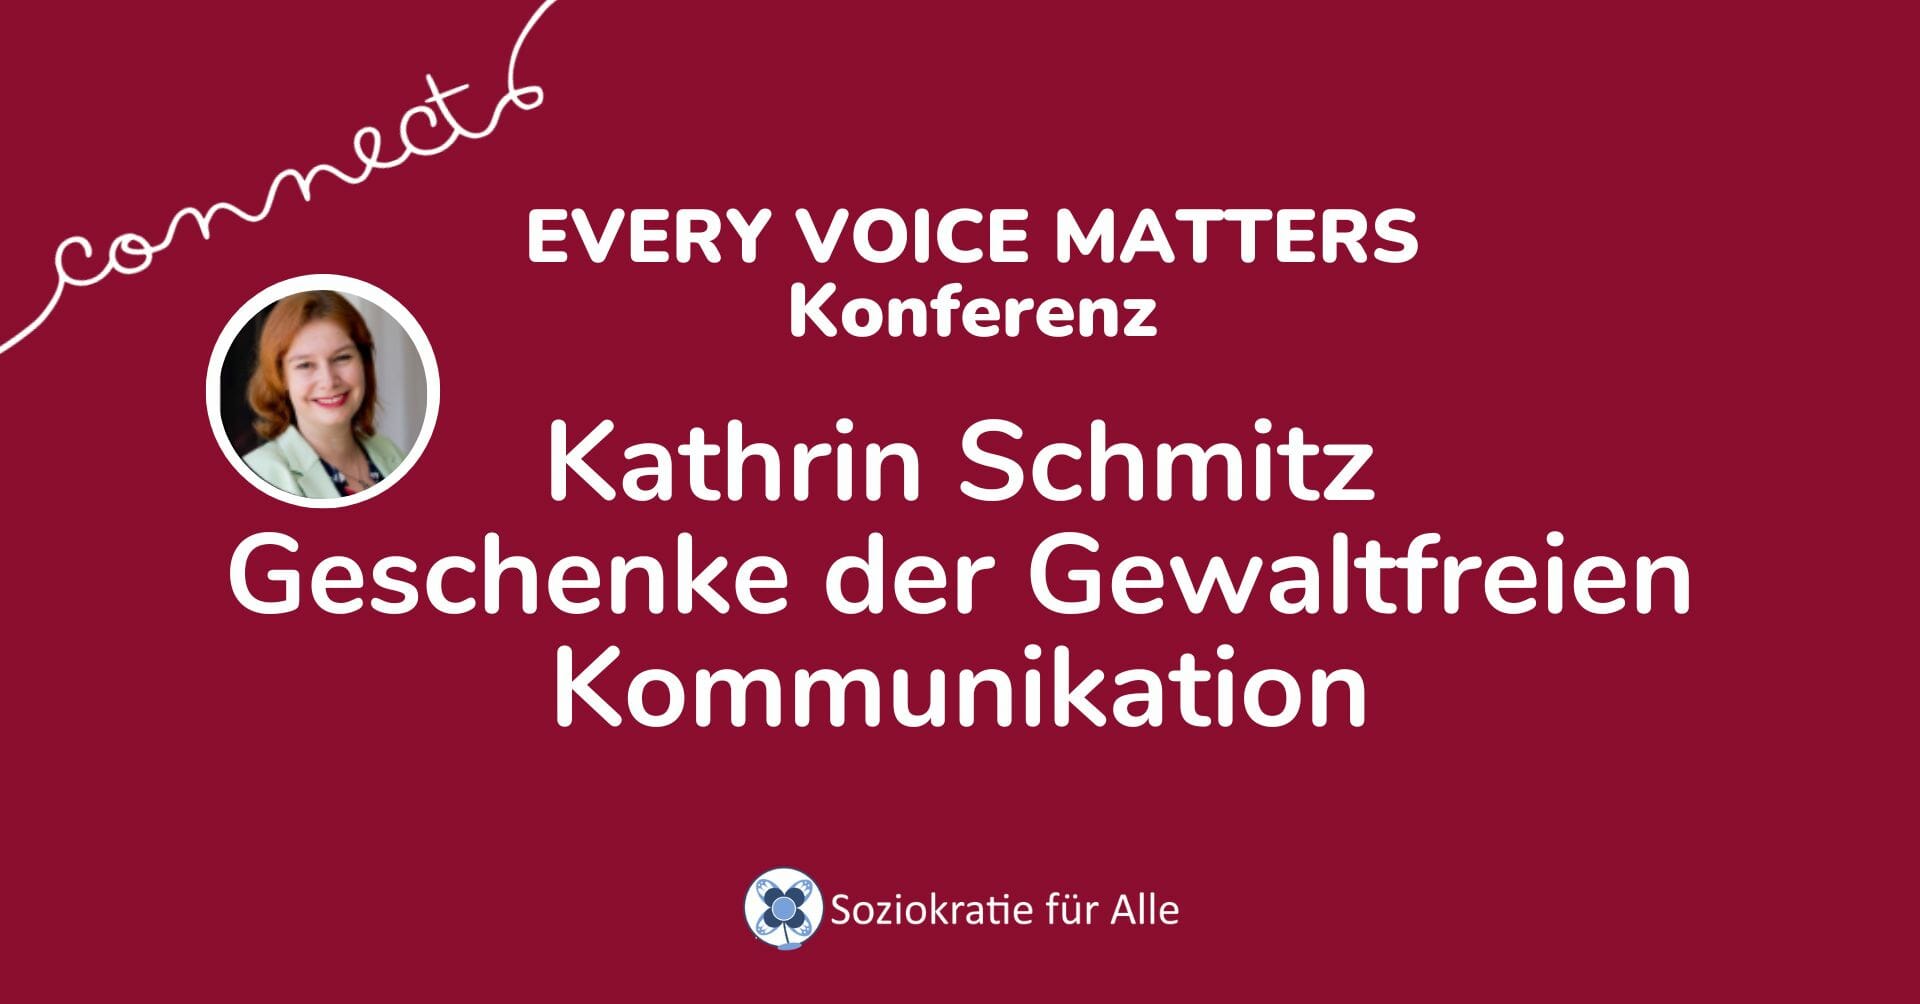 Kathrin Schmitz —Geschenke der Gewaltfreien Kommunikation